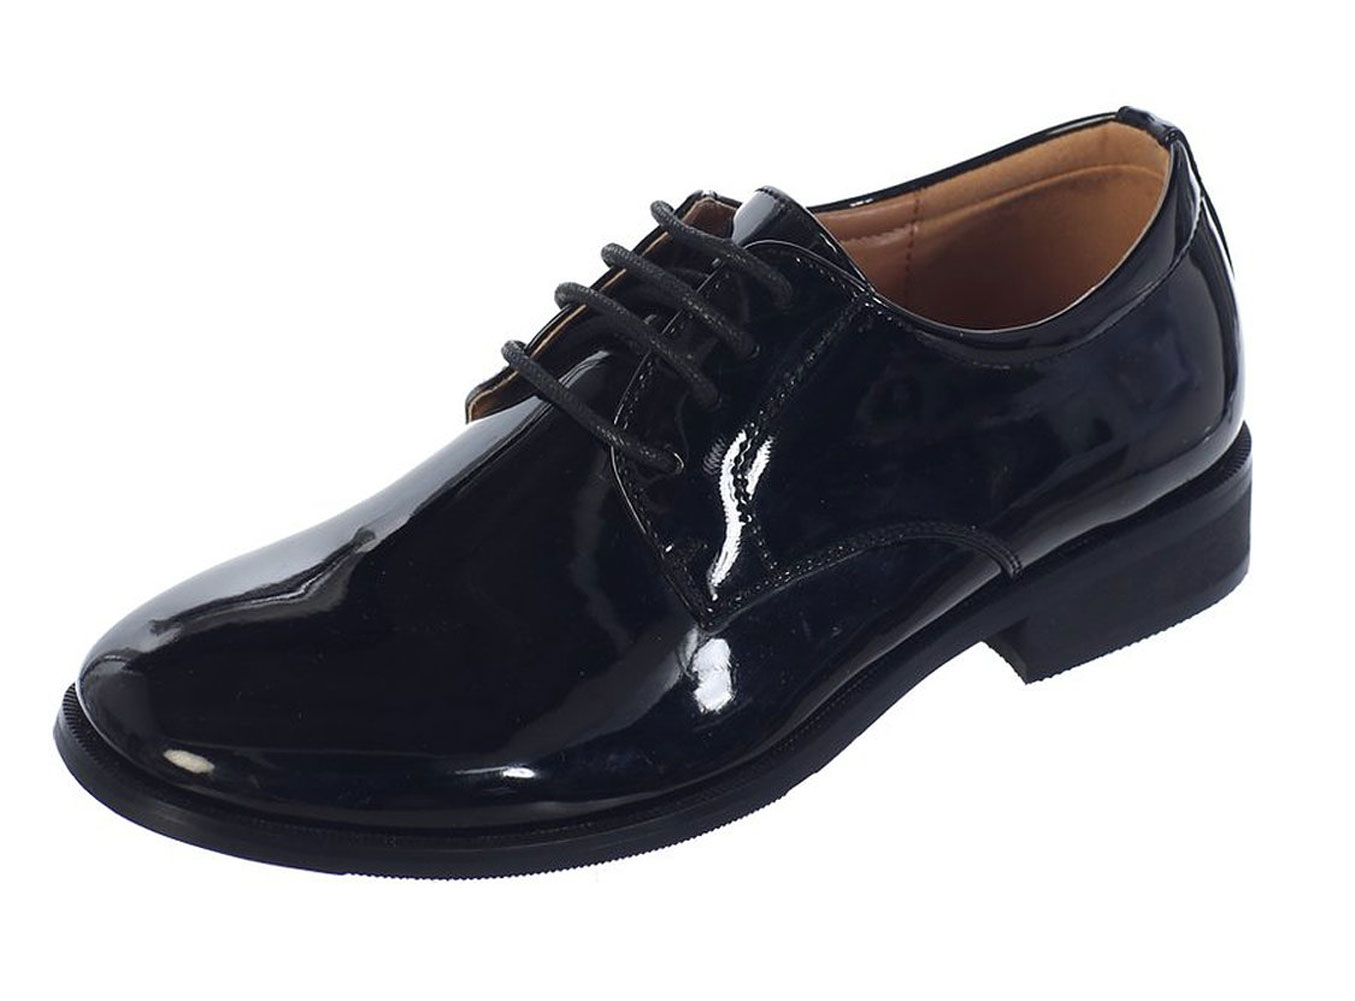 Avery Hill Boys Shiny or Shiny Patent Leather Shoes Bk Shiny Bigkid 5Y